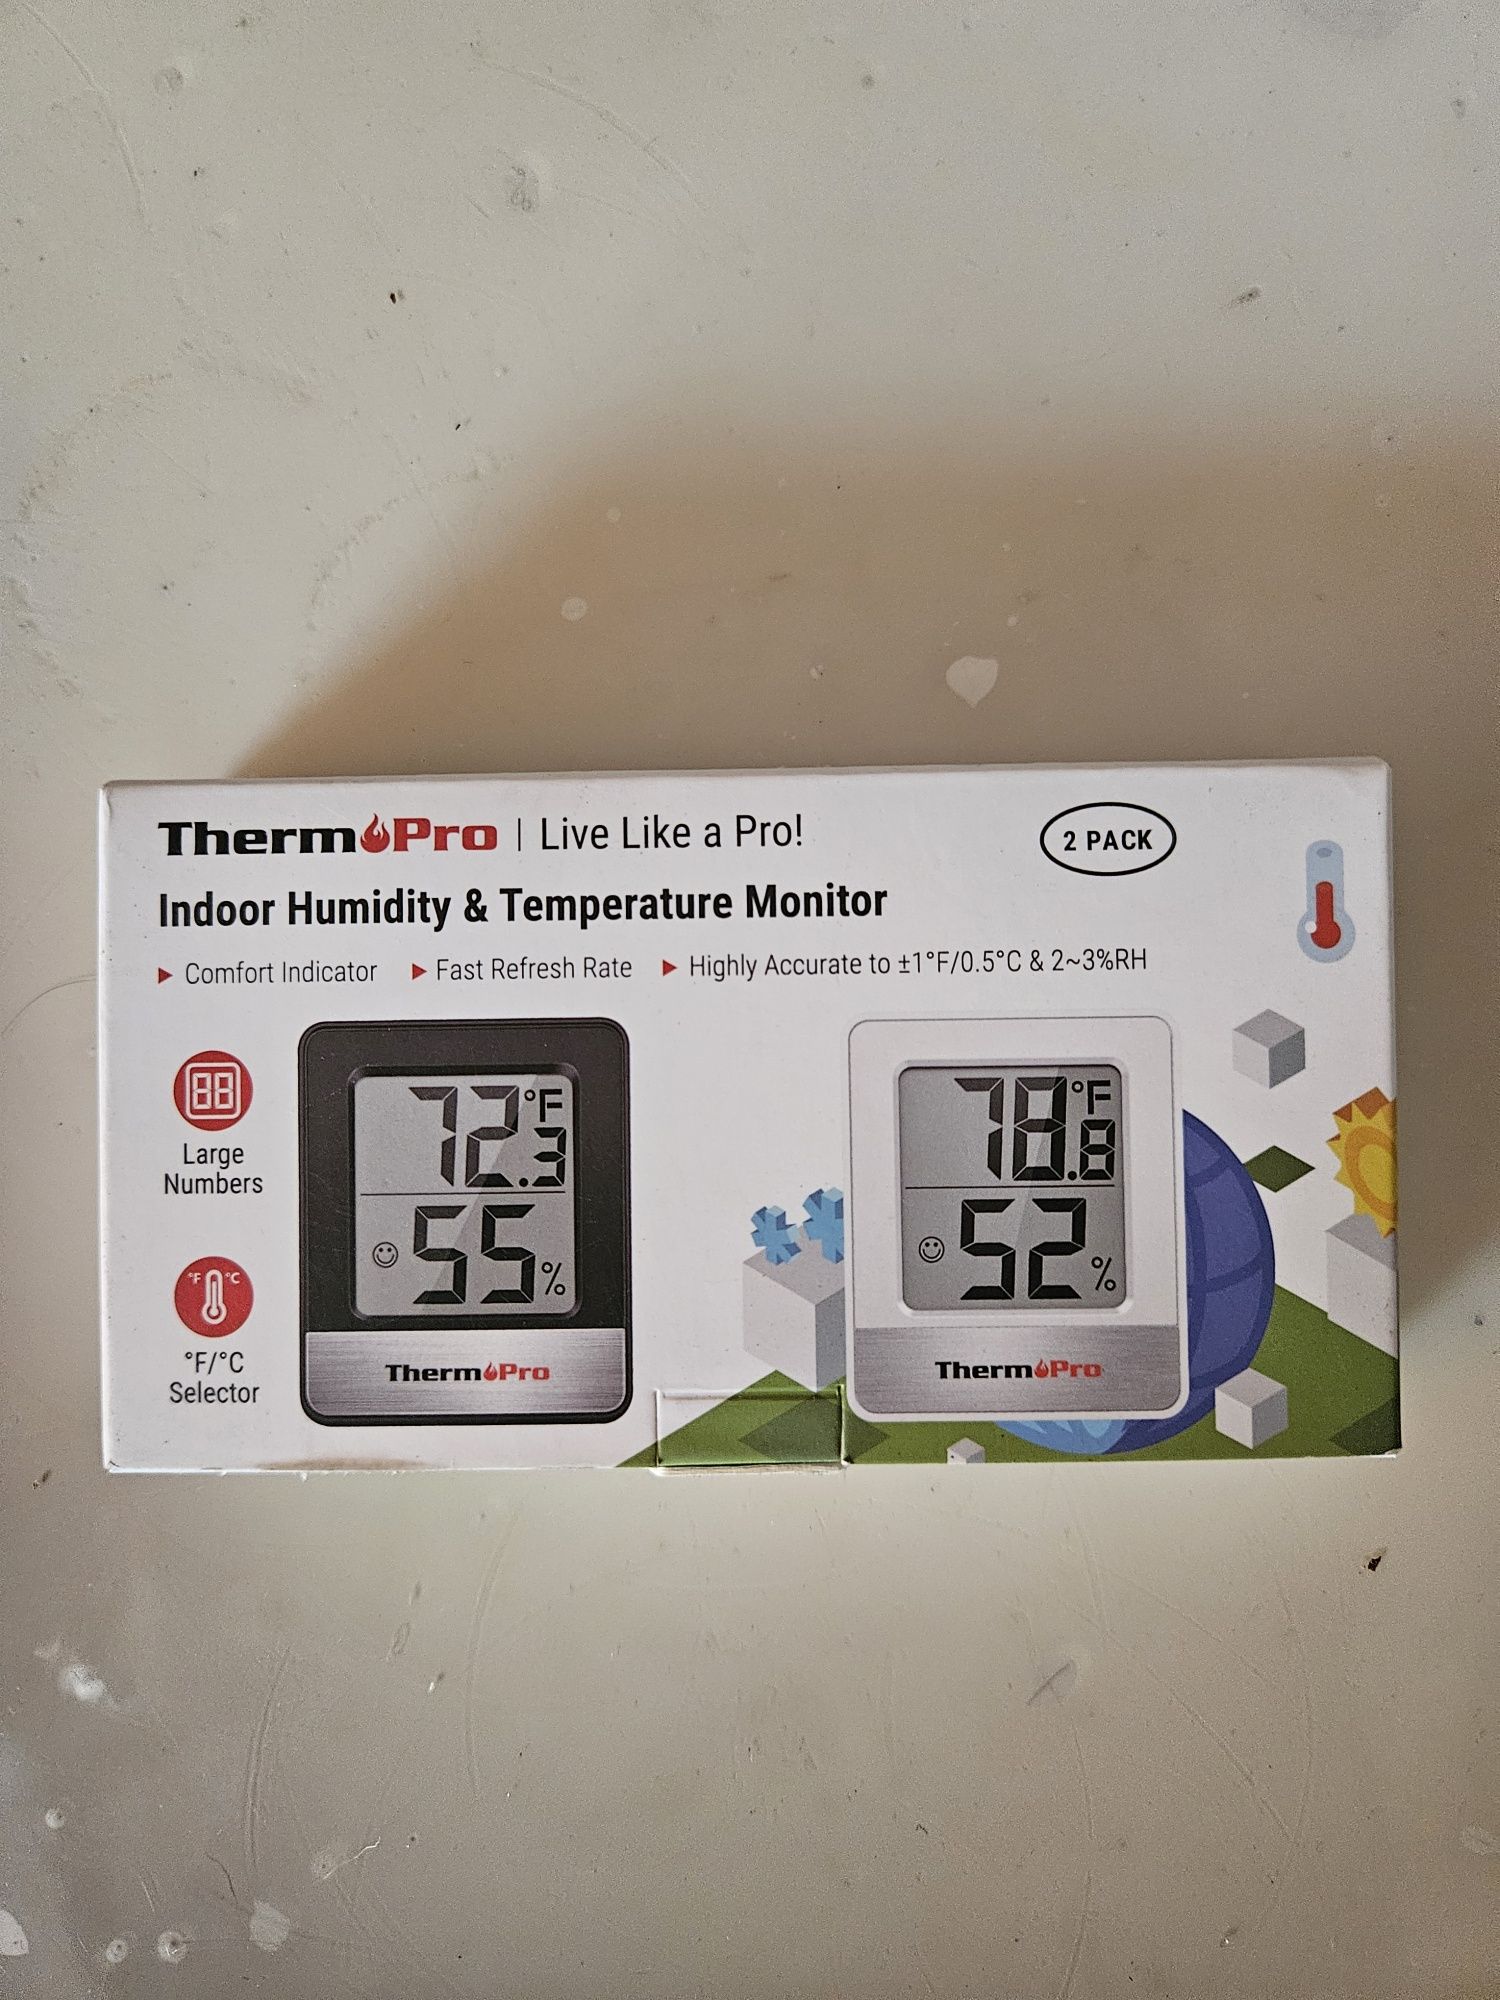 ThermoPro TP49 cyfrowy mini termometr z funkcją higrometru,